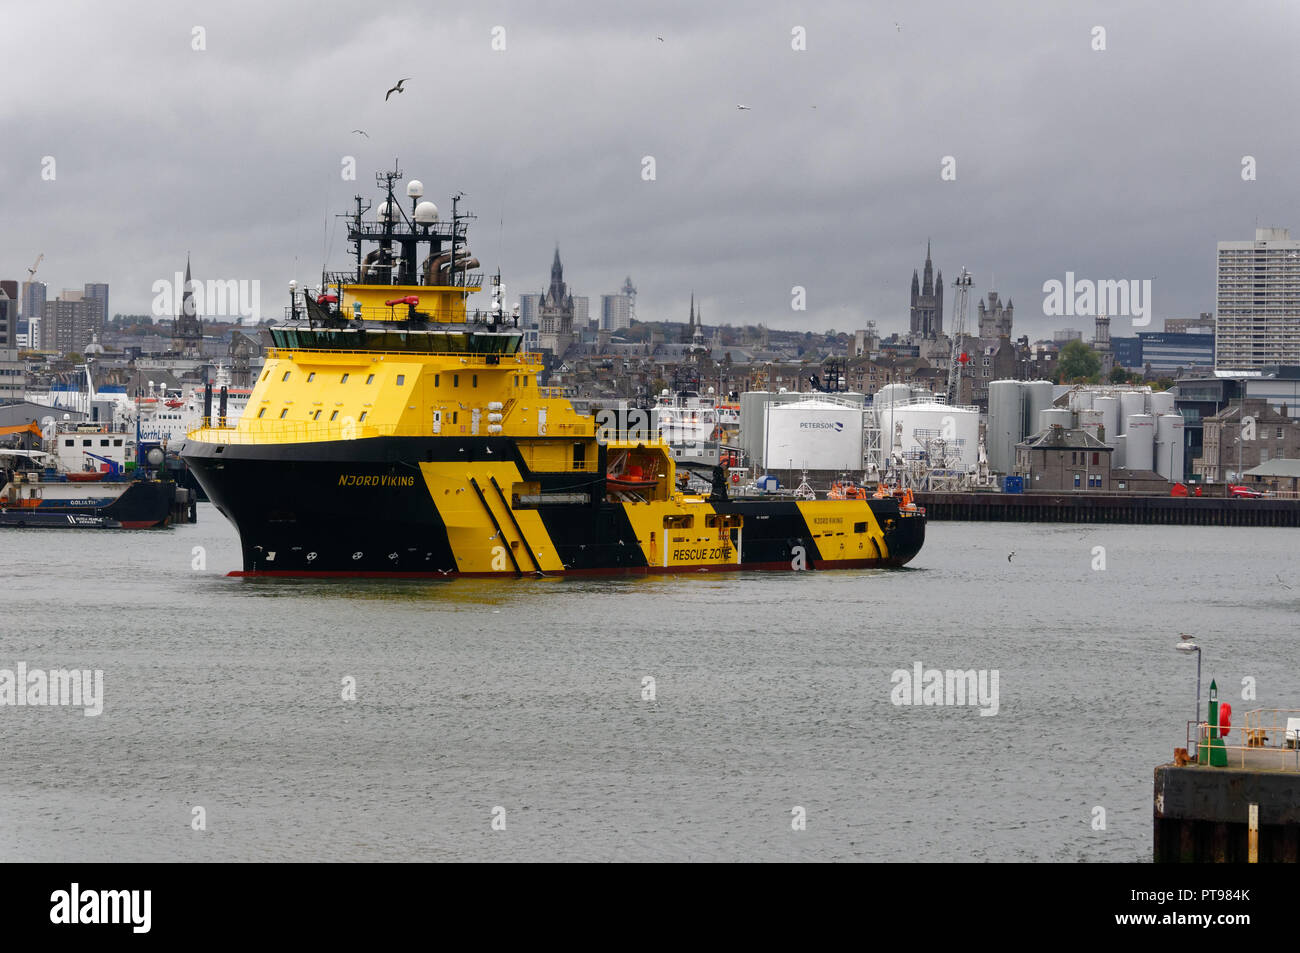 Die njord Viking hohe Ice-klassifizierten AHTS-Schiff in der Lage, Operationen in rauer Umgebung offshore in Aberdeen Hafen Stockfoto